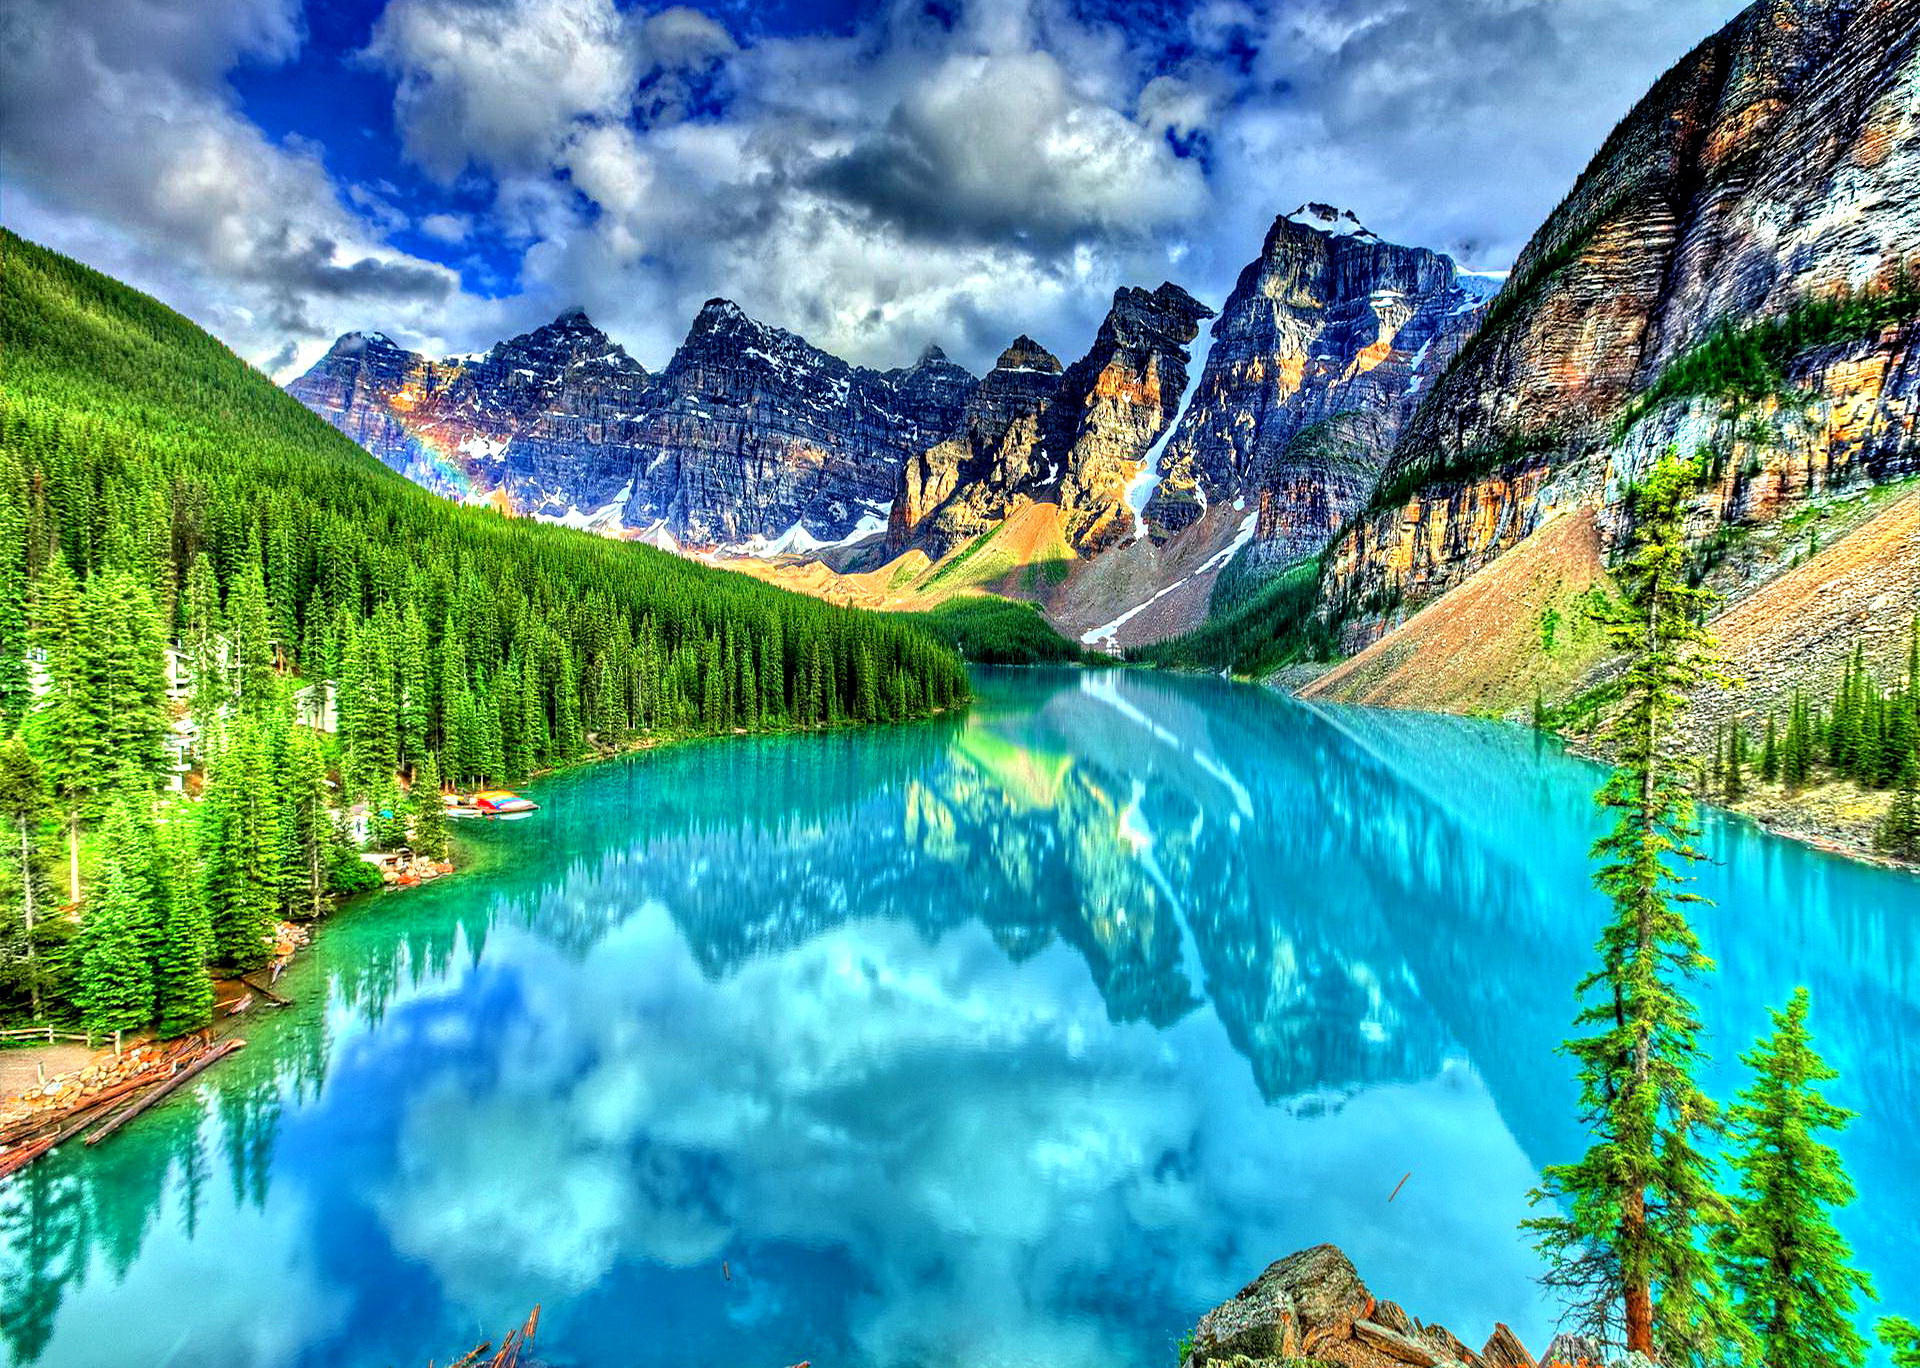 amazing landscape wallpapers,natural landscape,nature,mountain,mountainous landforms,reflection